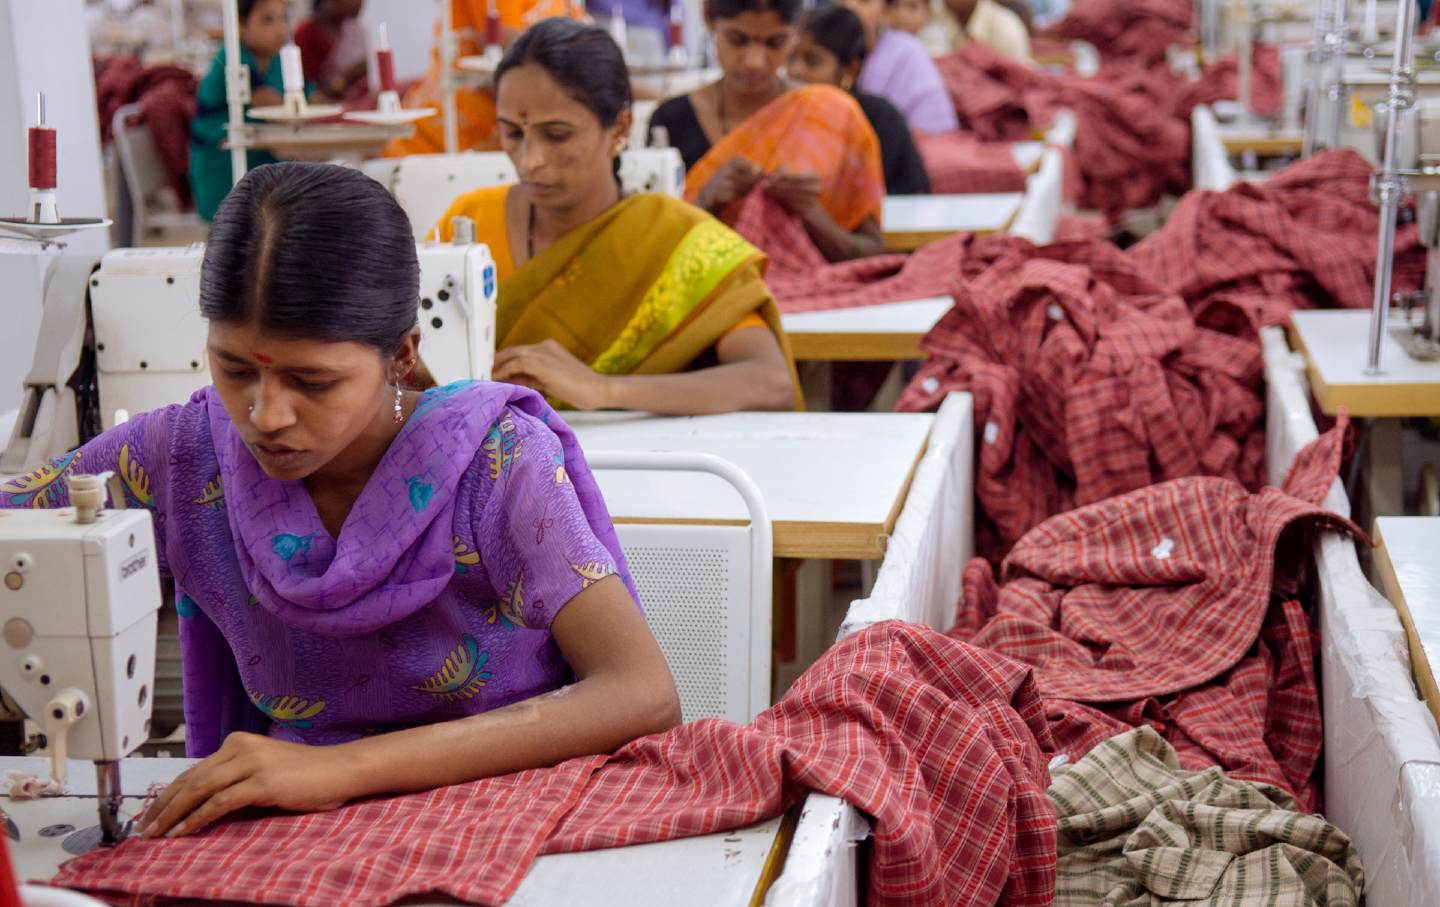 Το φρικτό τίμημα της μόδας: Δολοφονίες και βιασμοί - Ο εφιάλτης των εργατριών στα εργοστάσια ρούχων